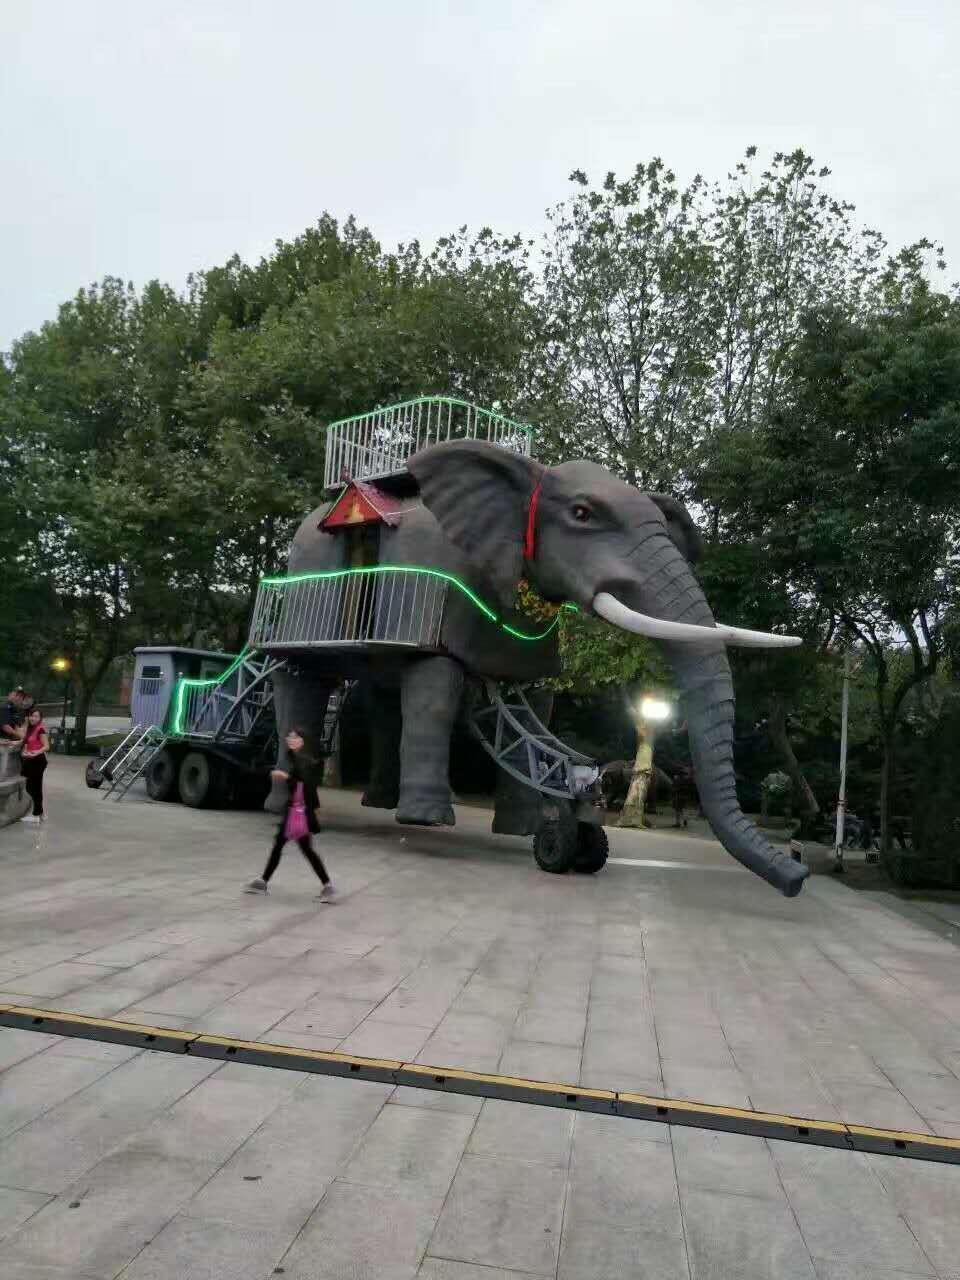 上海市巡游大象展览巡游大象出租厂家巡游大象 巡游大象展览巡游大象出租出售